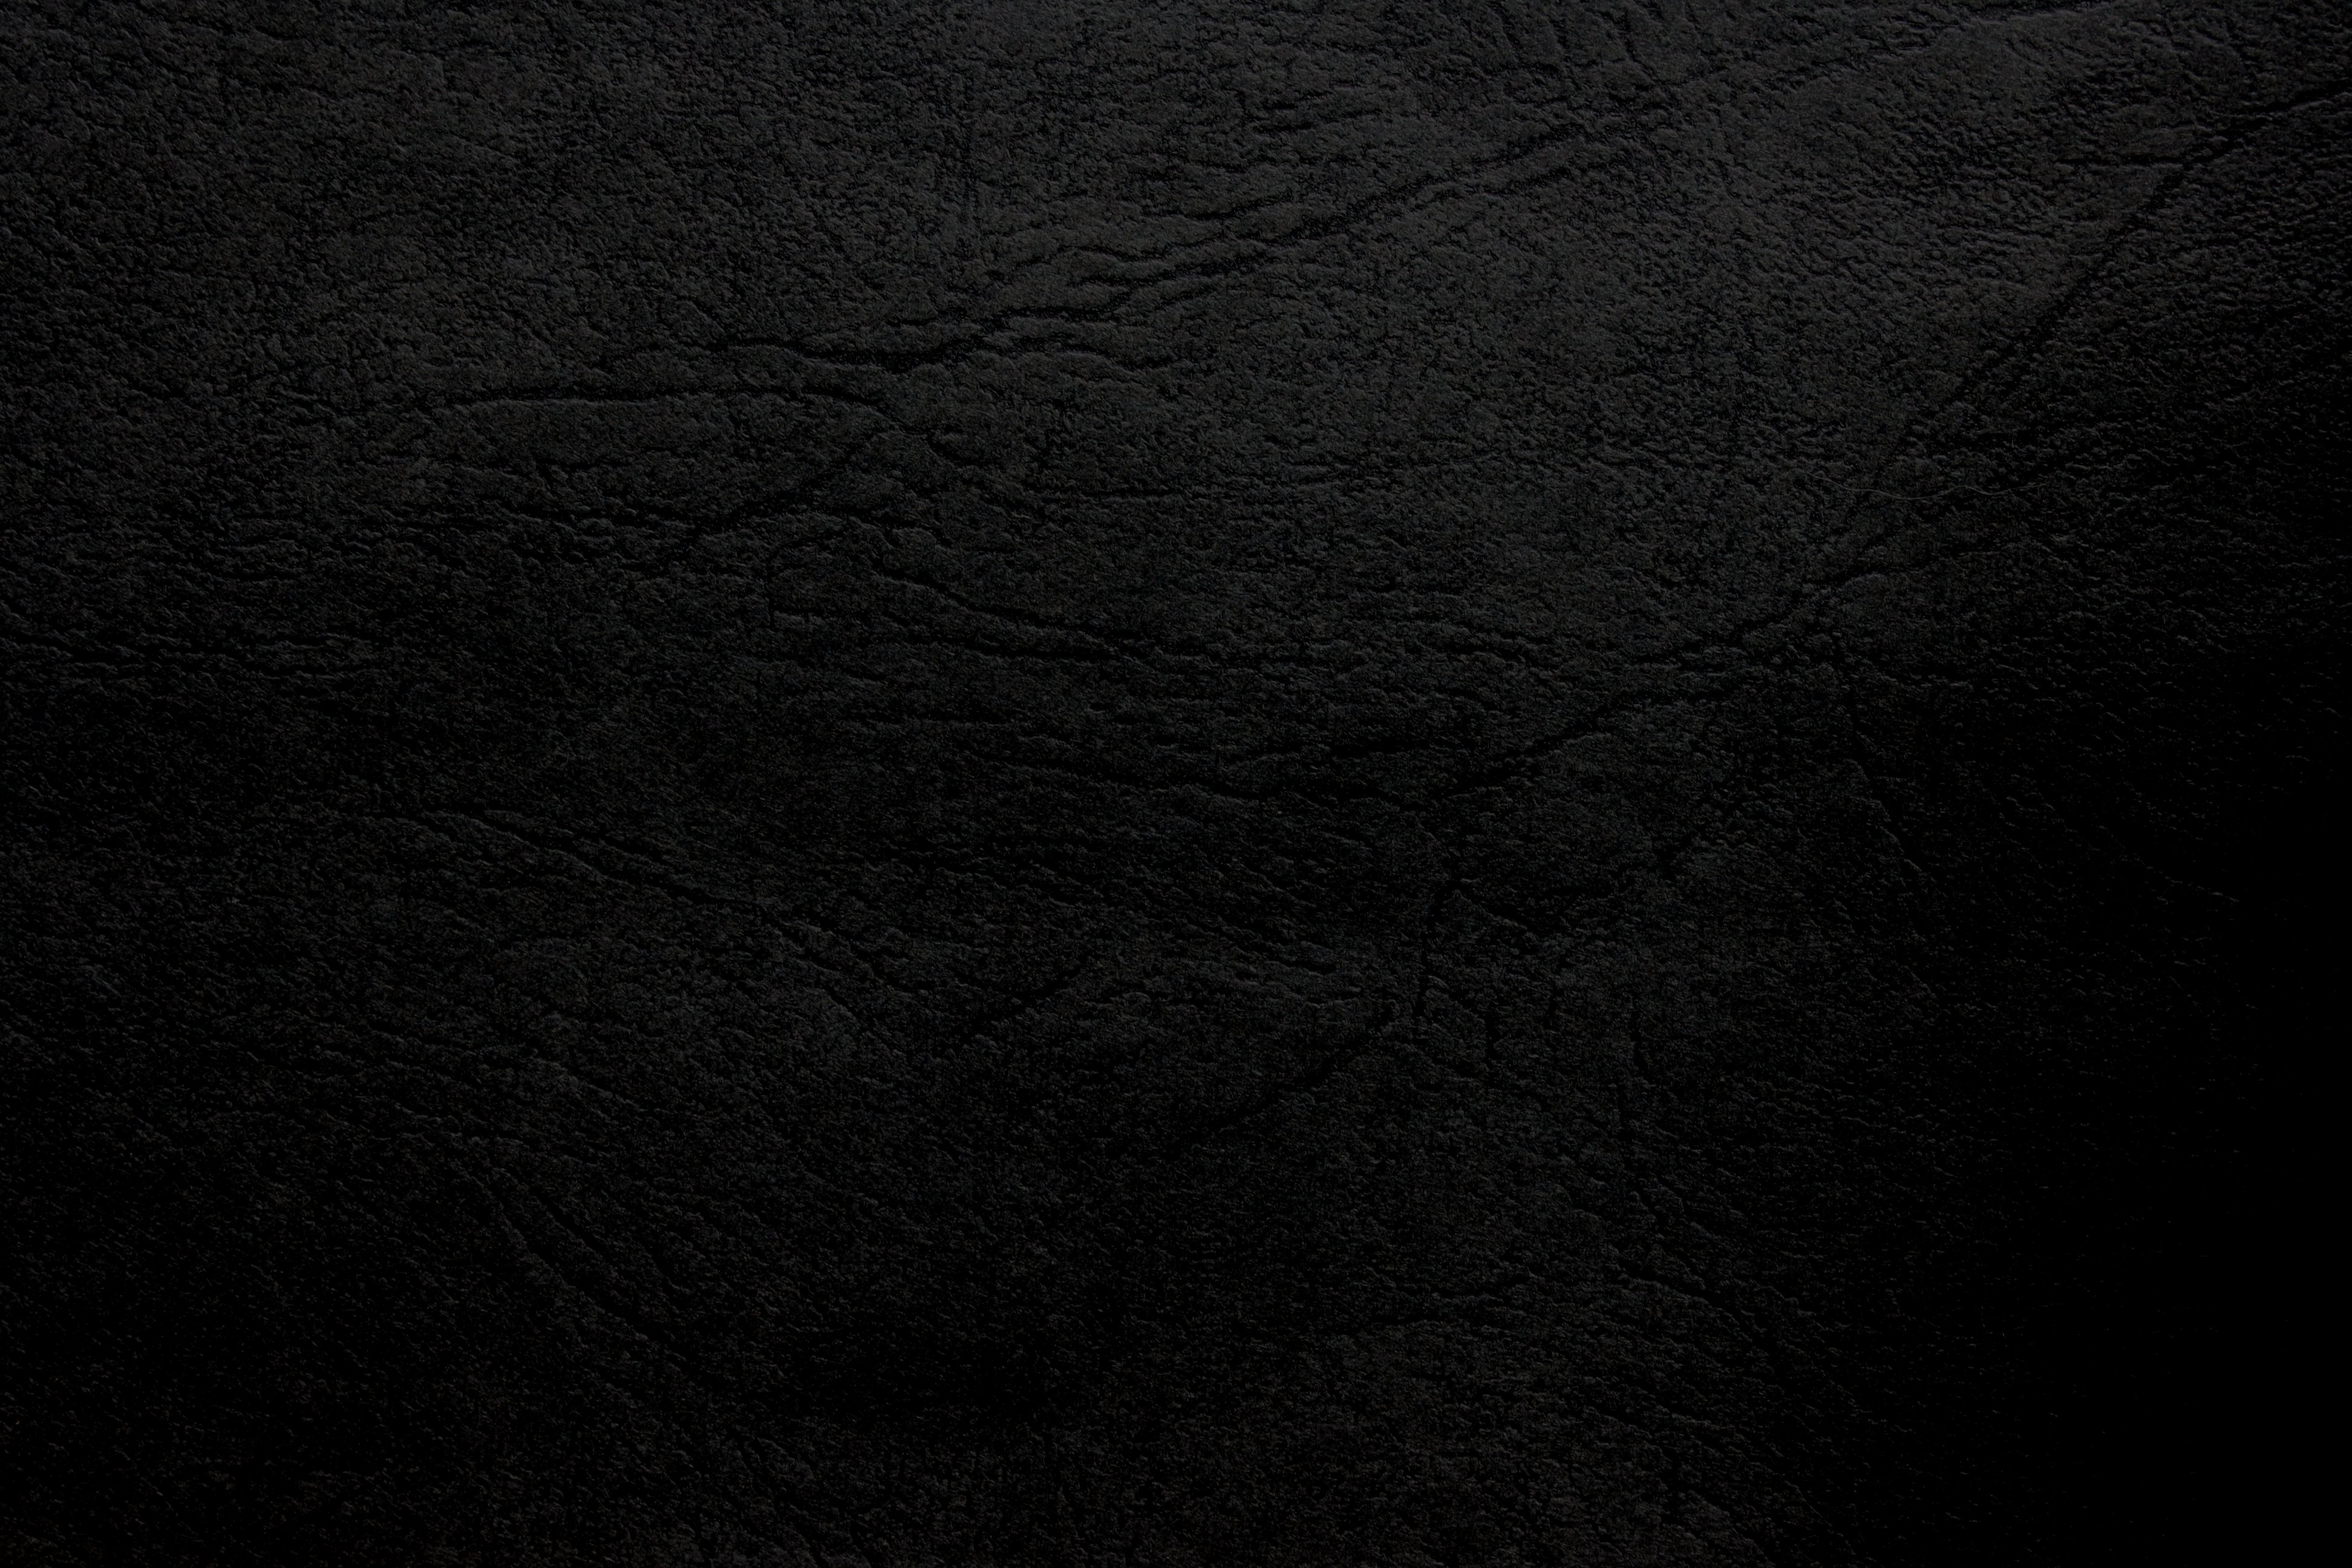 Black Leather Texture Picture | Free Photograph | Photos Public Domain